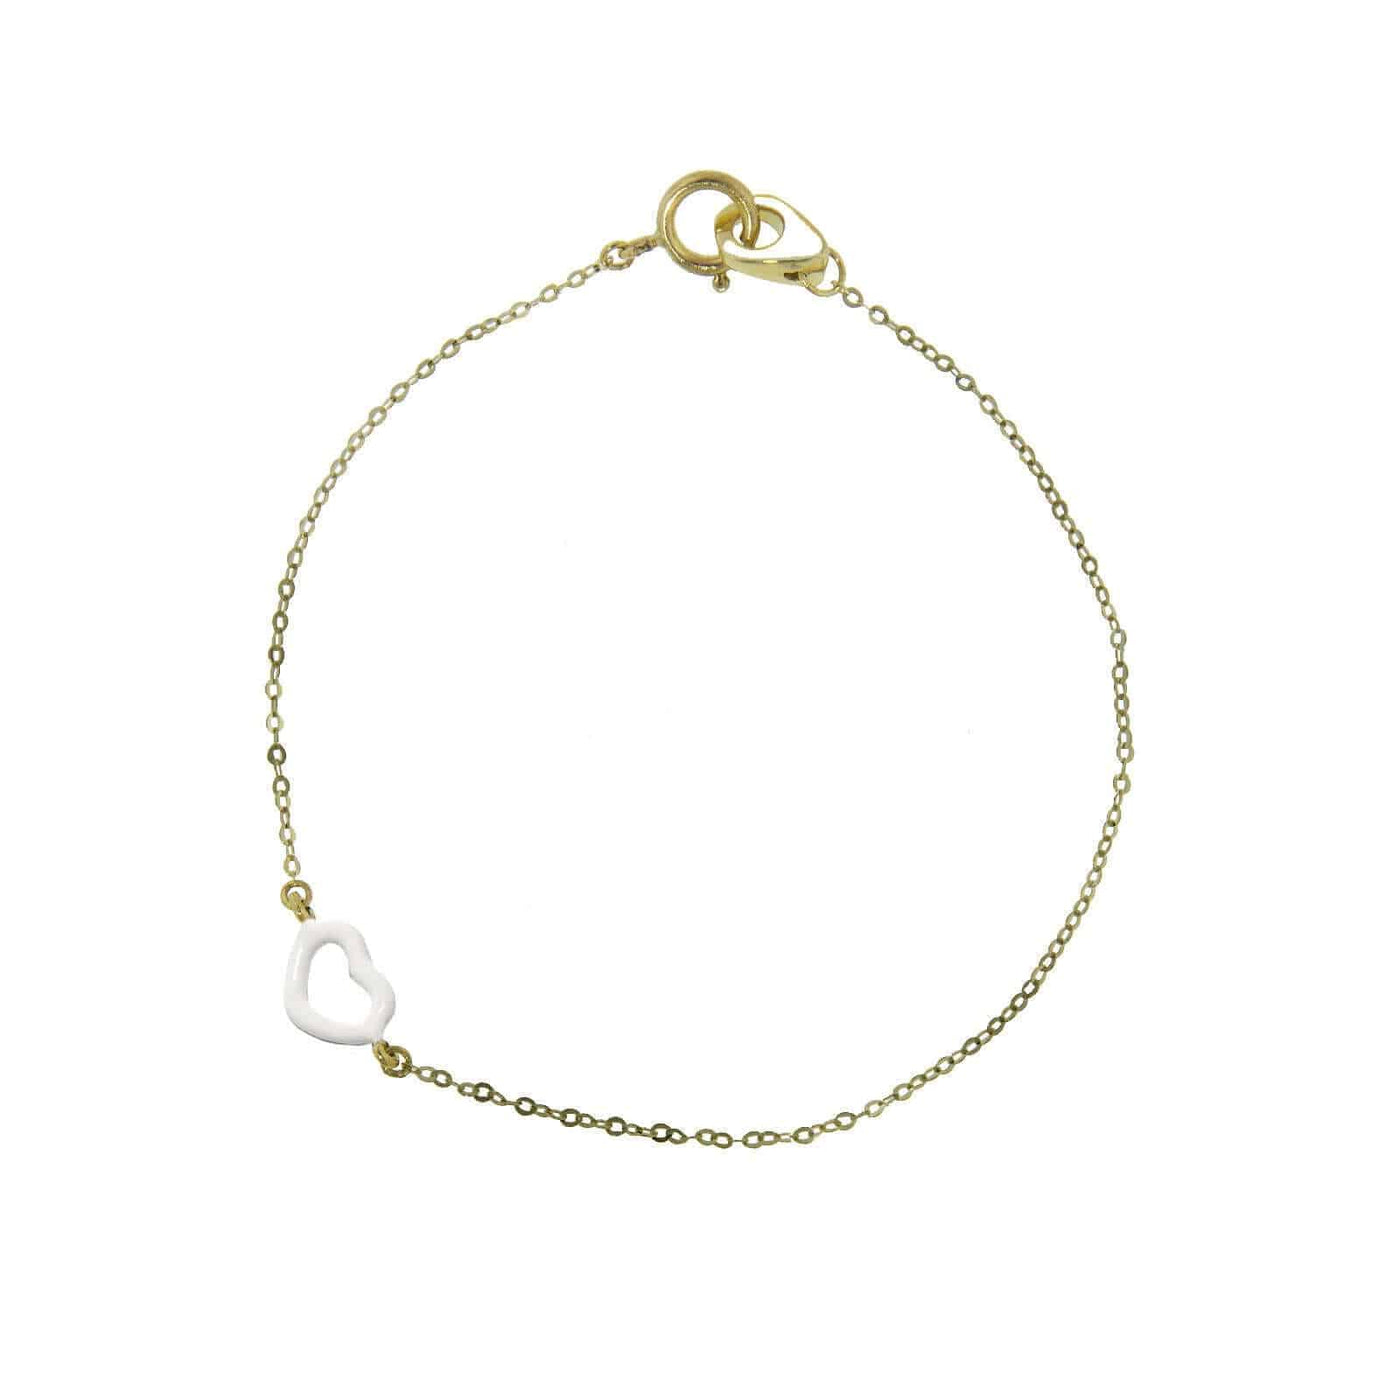 White Enamel Heart Bracelet - Jordan Askill - Ileana Makri store